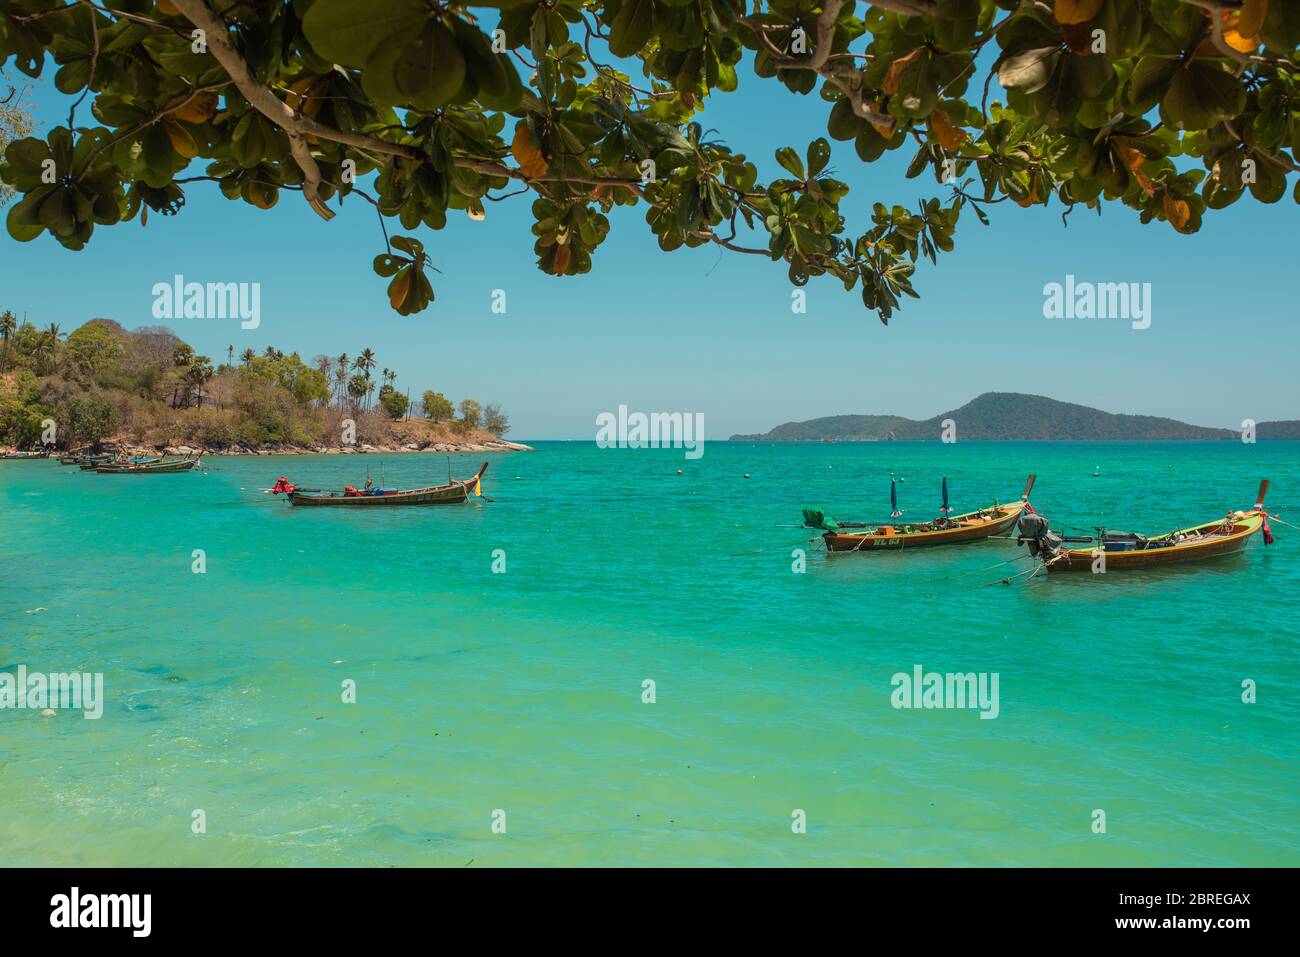 Mar con barcos. Los barcos se encuentran frente a la costa del mar más limpio en la costa con manglares. Foto de stock